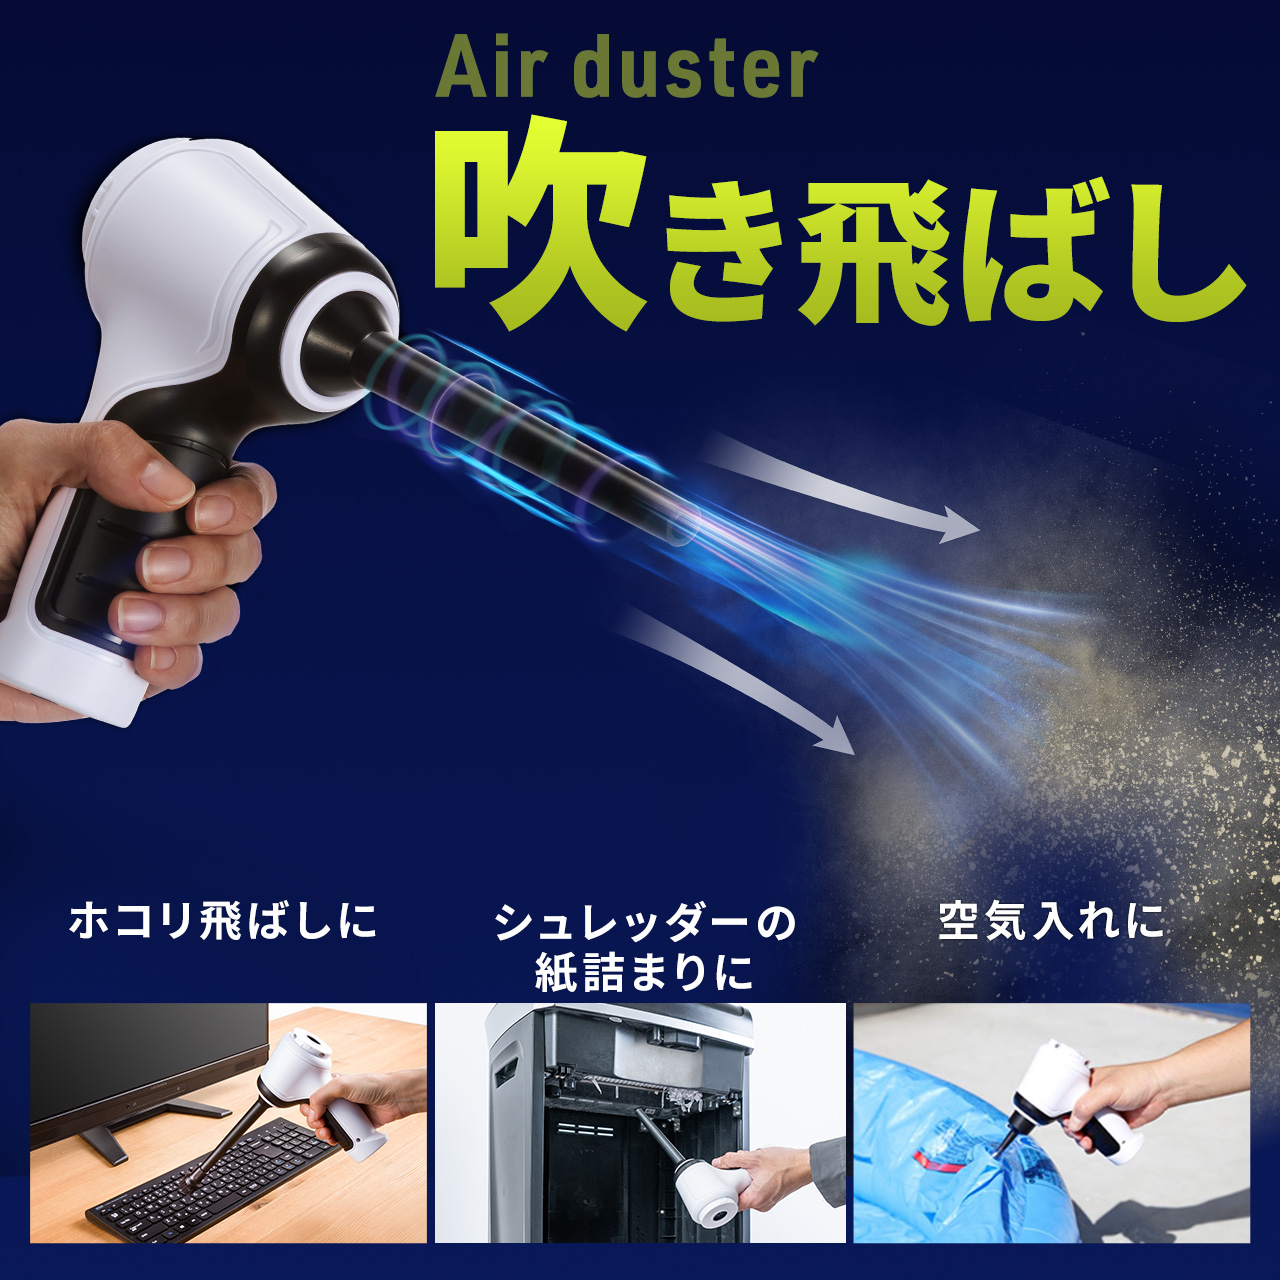 電動エアダスター 強力エアダスター バキュームクリーナー 充電式 吹き飛ばし 吸い込み クリーナー ハンディクリーナー 200-CD082